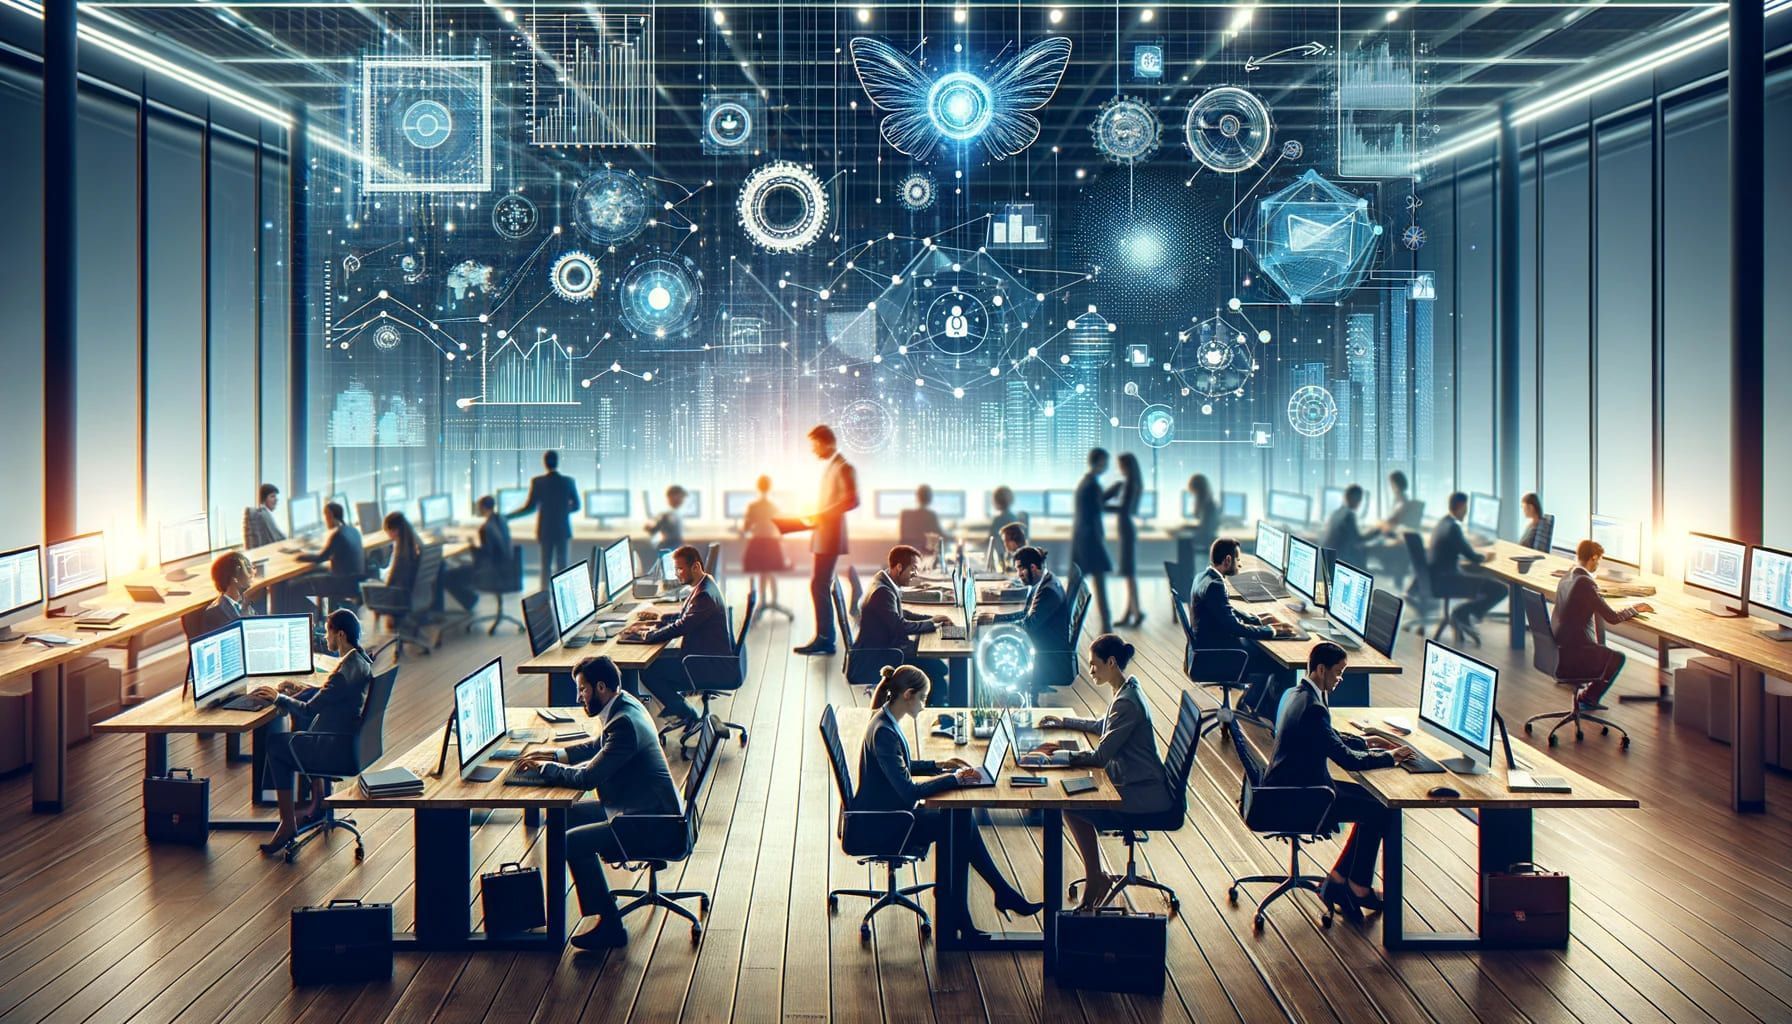 Profissionais colaborando em tecnologias emergentes como big data, IA e blockchain dentro de um escritório moderno, representando habilidades de um curso de Gestão de TI.